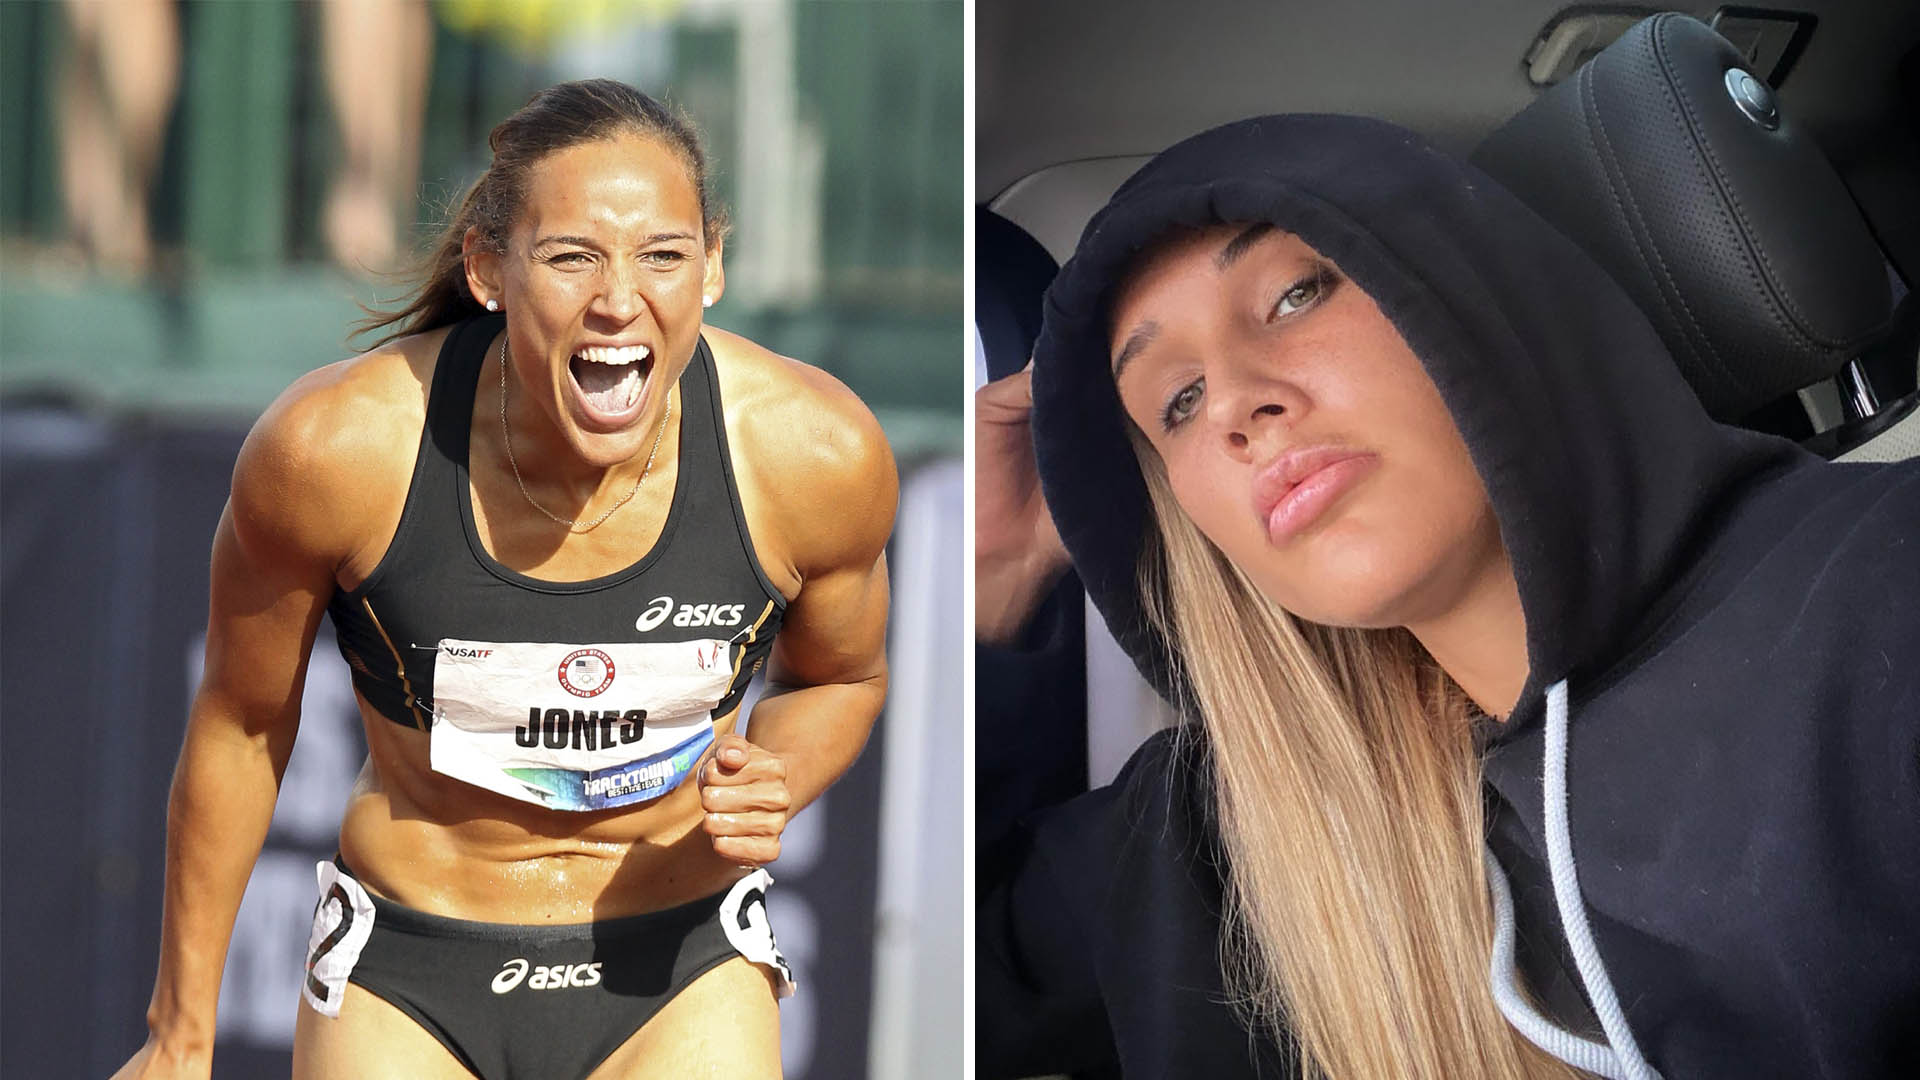 La Atleta Olímpica Lolo Jones Relató El Calvario Que Sufrió Por Tres Hombres Que La Acosaron En